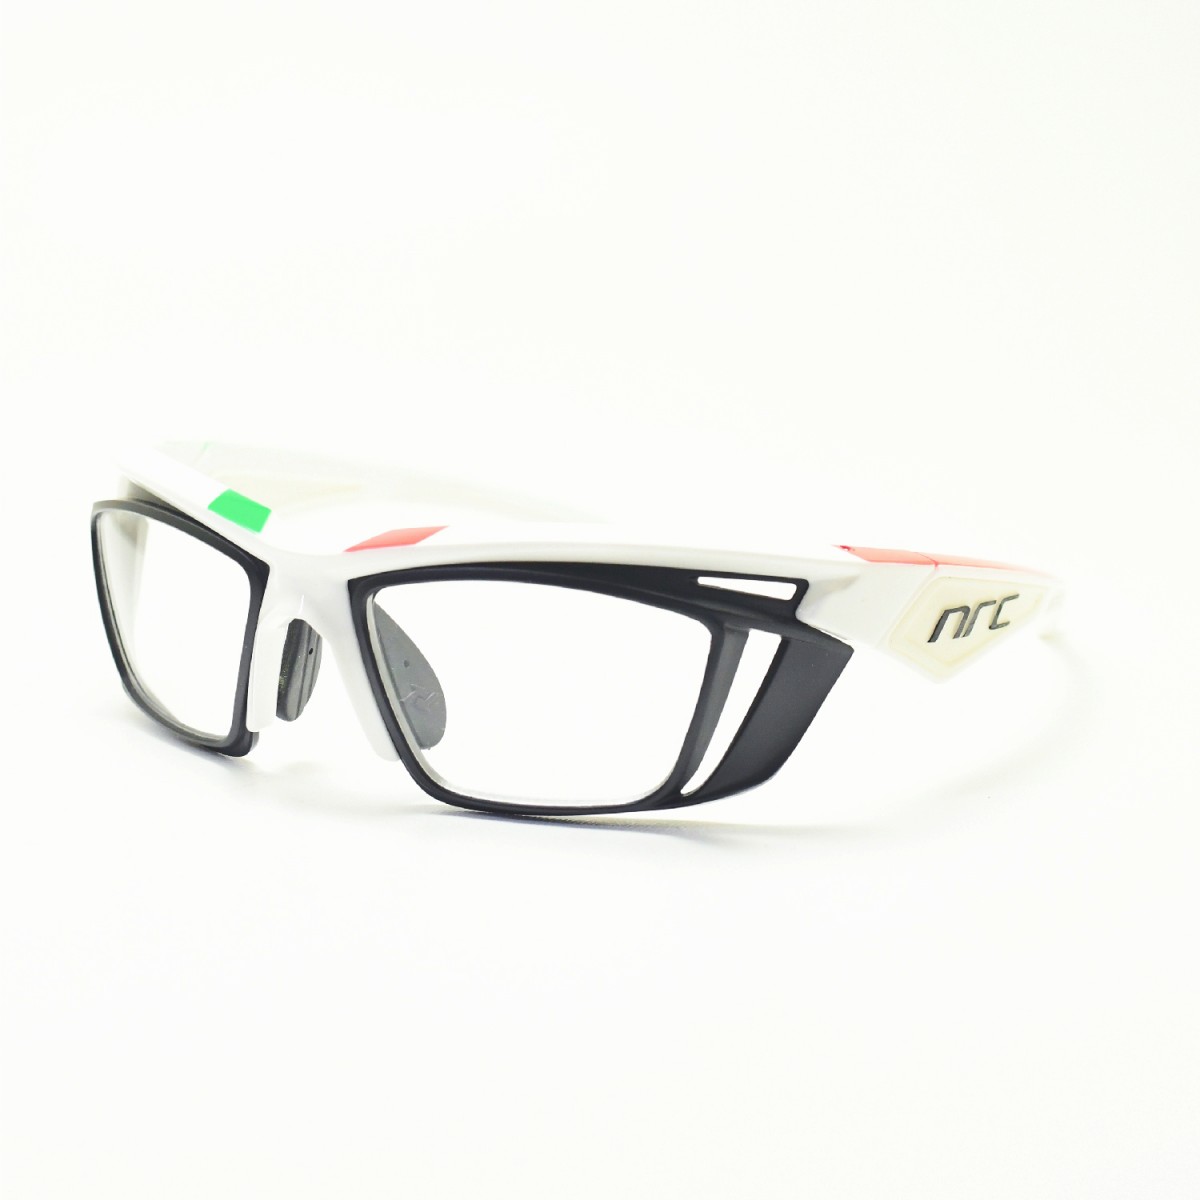 楽天市場 Nrc エヌアールシー X5 Docstelvio Optical Docメガネ 眼鏡 めがね メンズ レディース おしゃれ ブランド人気 おすすめ フレーム 流行り 度付き レンズ サングラス デコリンメガネ